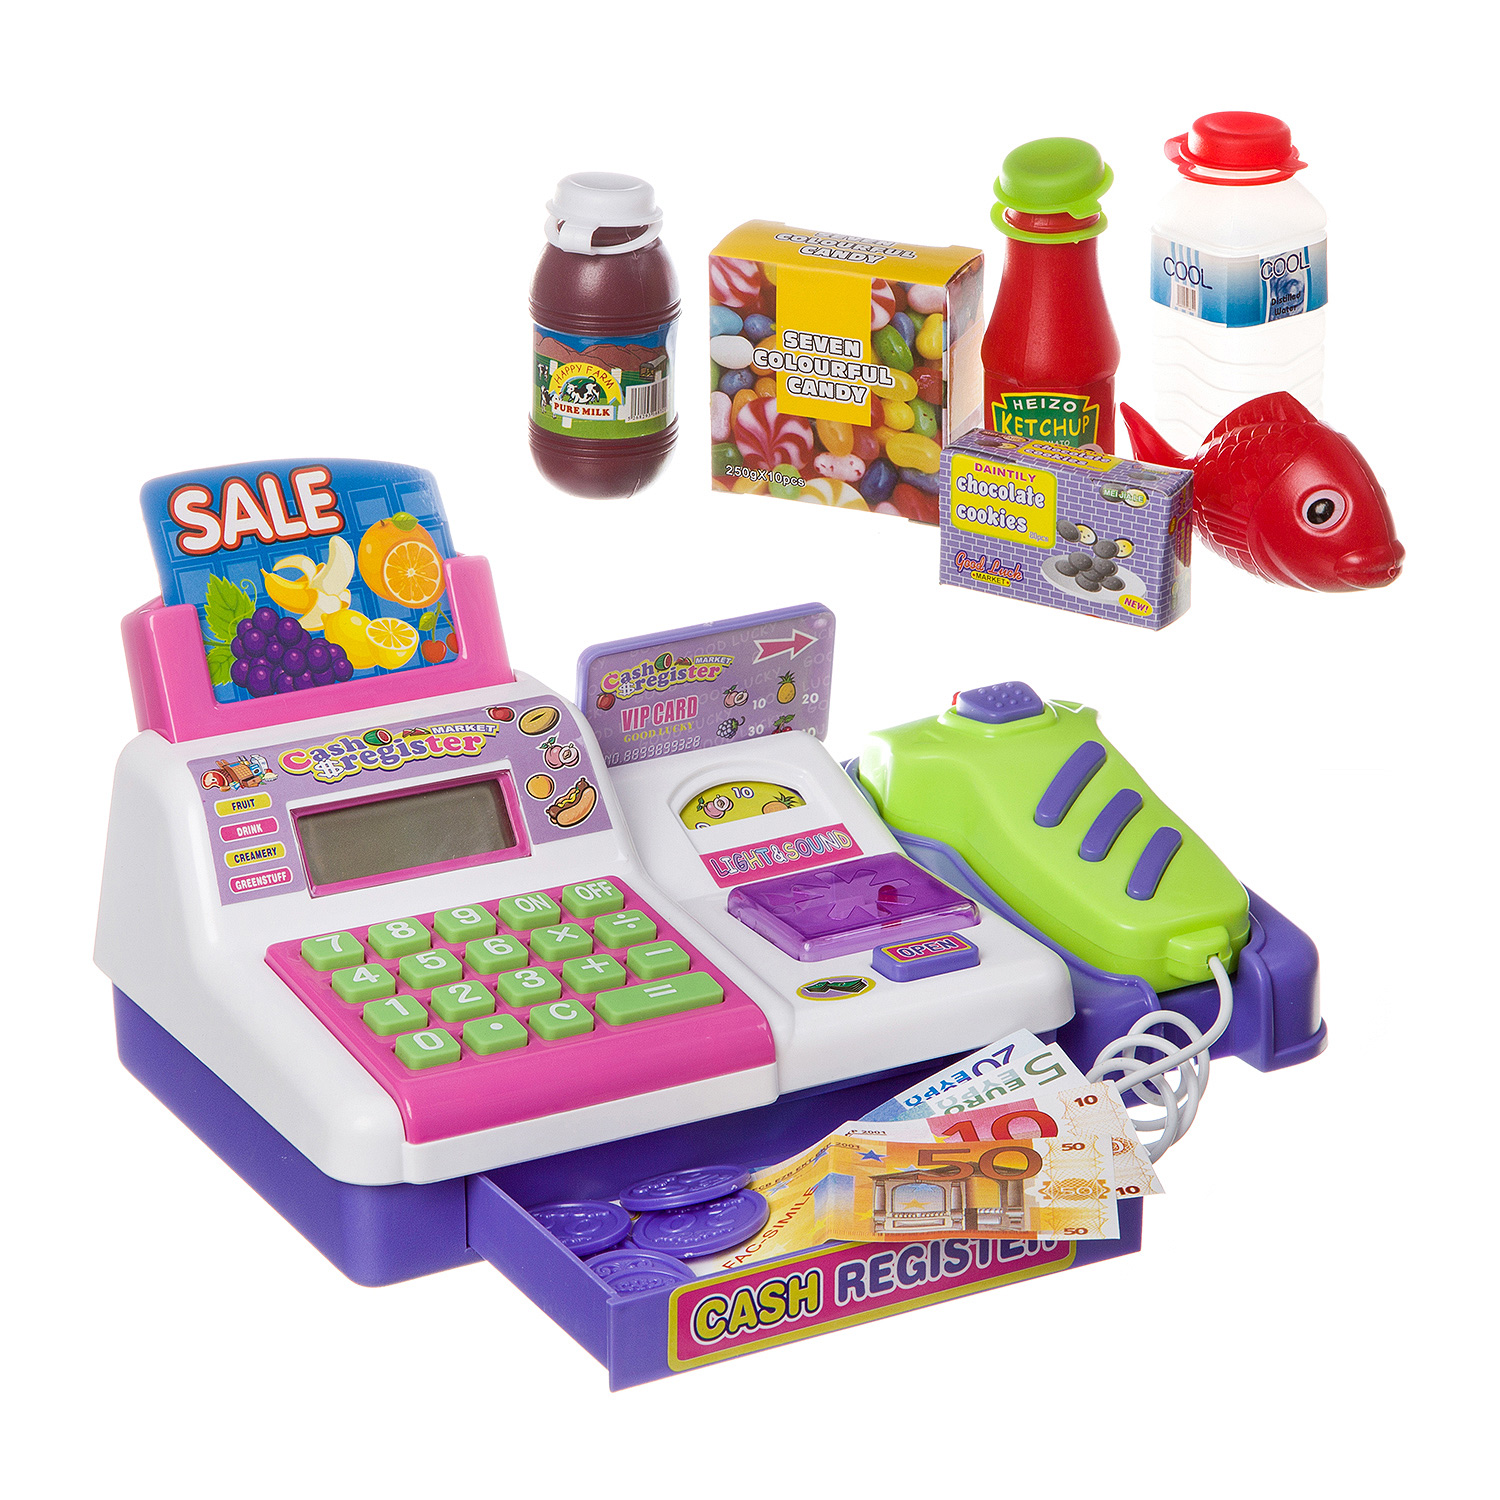 Детский игровой кассовый аппарат Play Smart «Мой магазин» с тележкой, аксессуарами, свето-звуковыми эффектами / 7562B